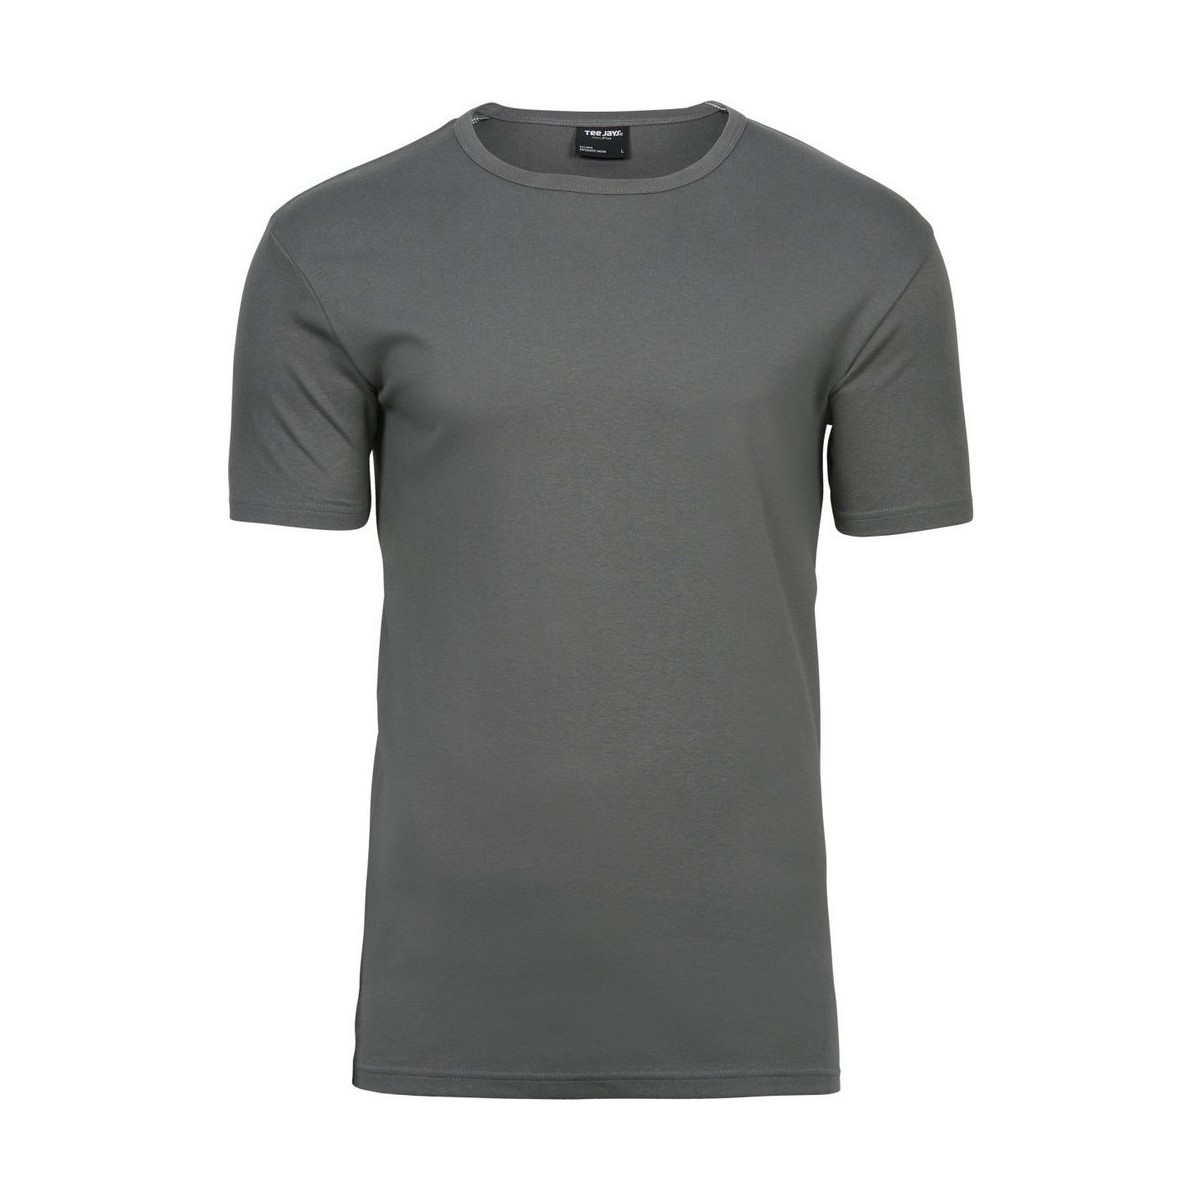 Abbigliamento Uomo T-shirt maniche corte Tee Jays Interlock Grigio